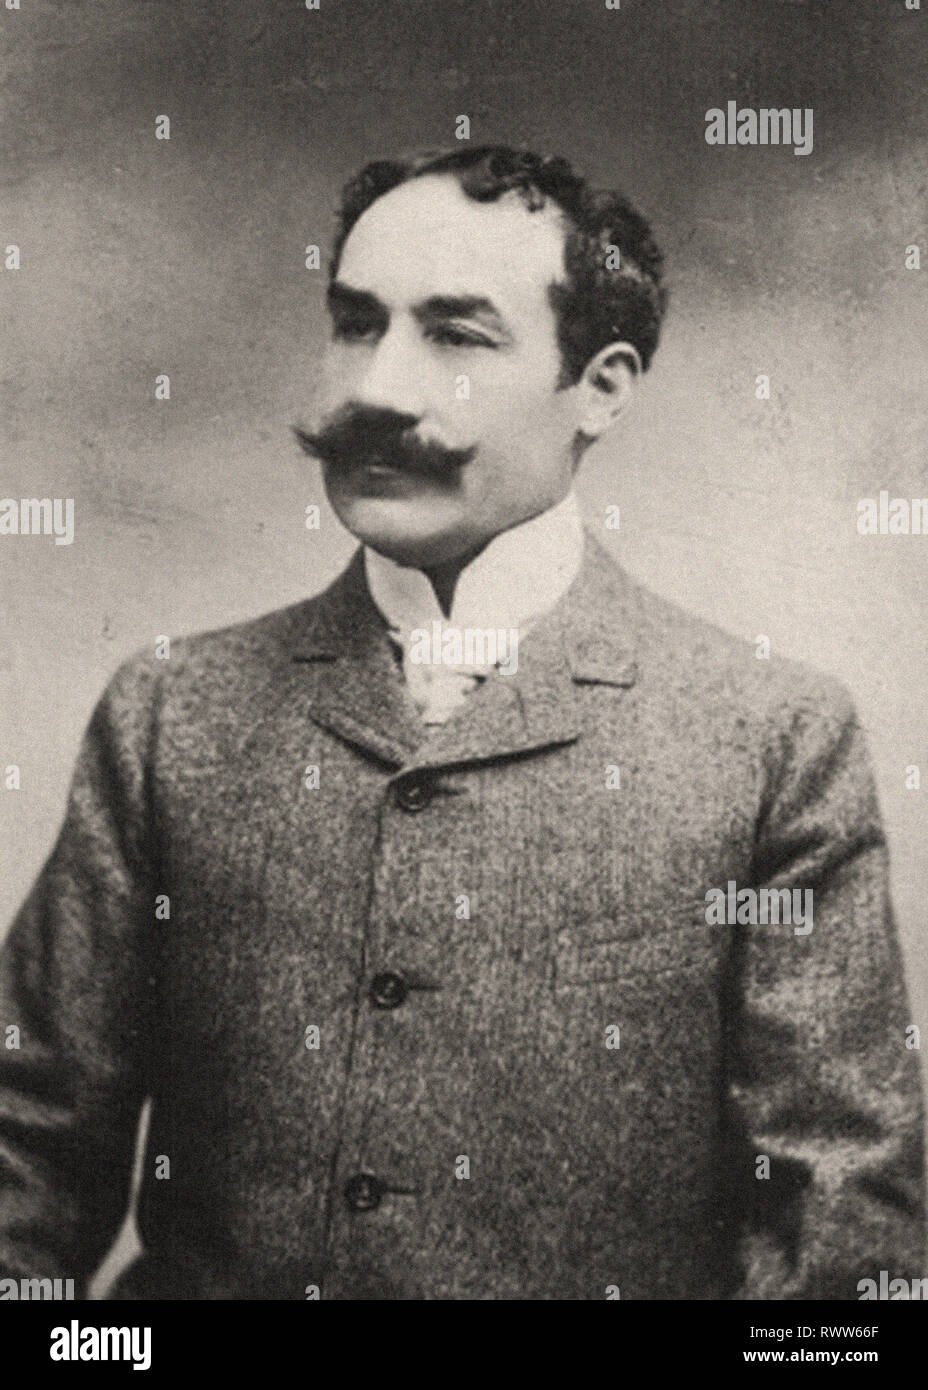 Photographic portrait of Calmettes, André Stock Photo